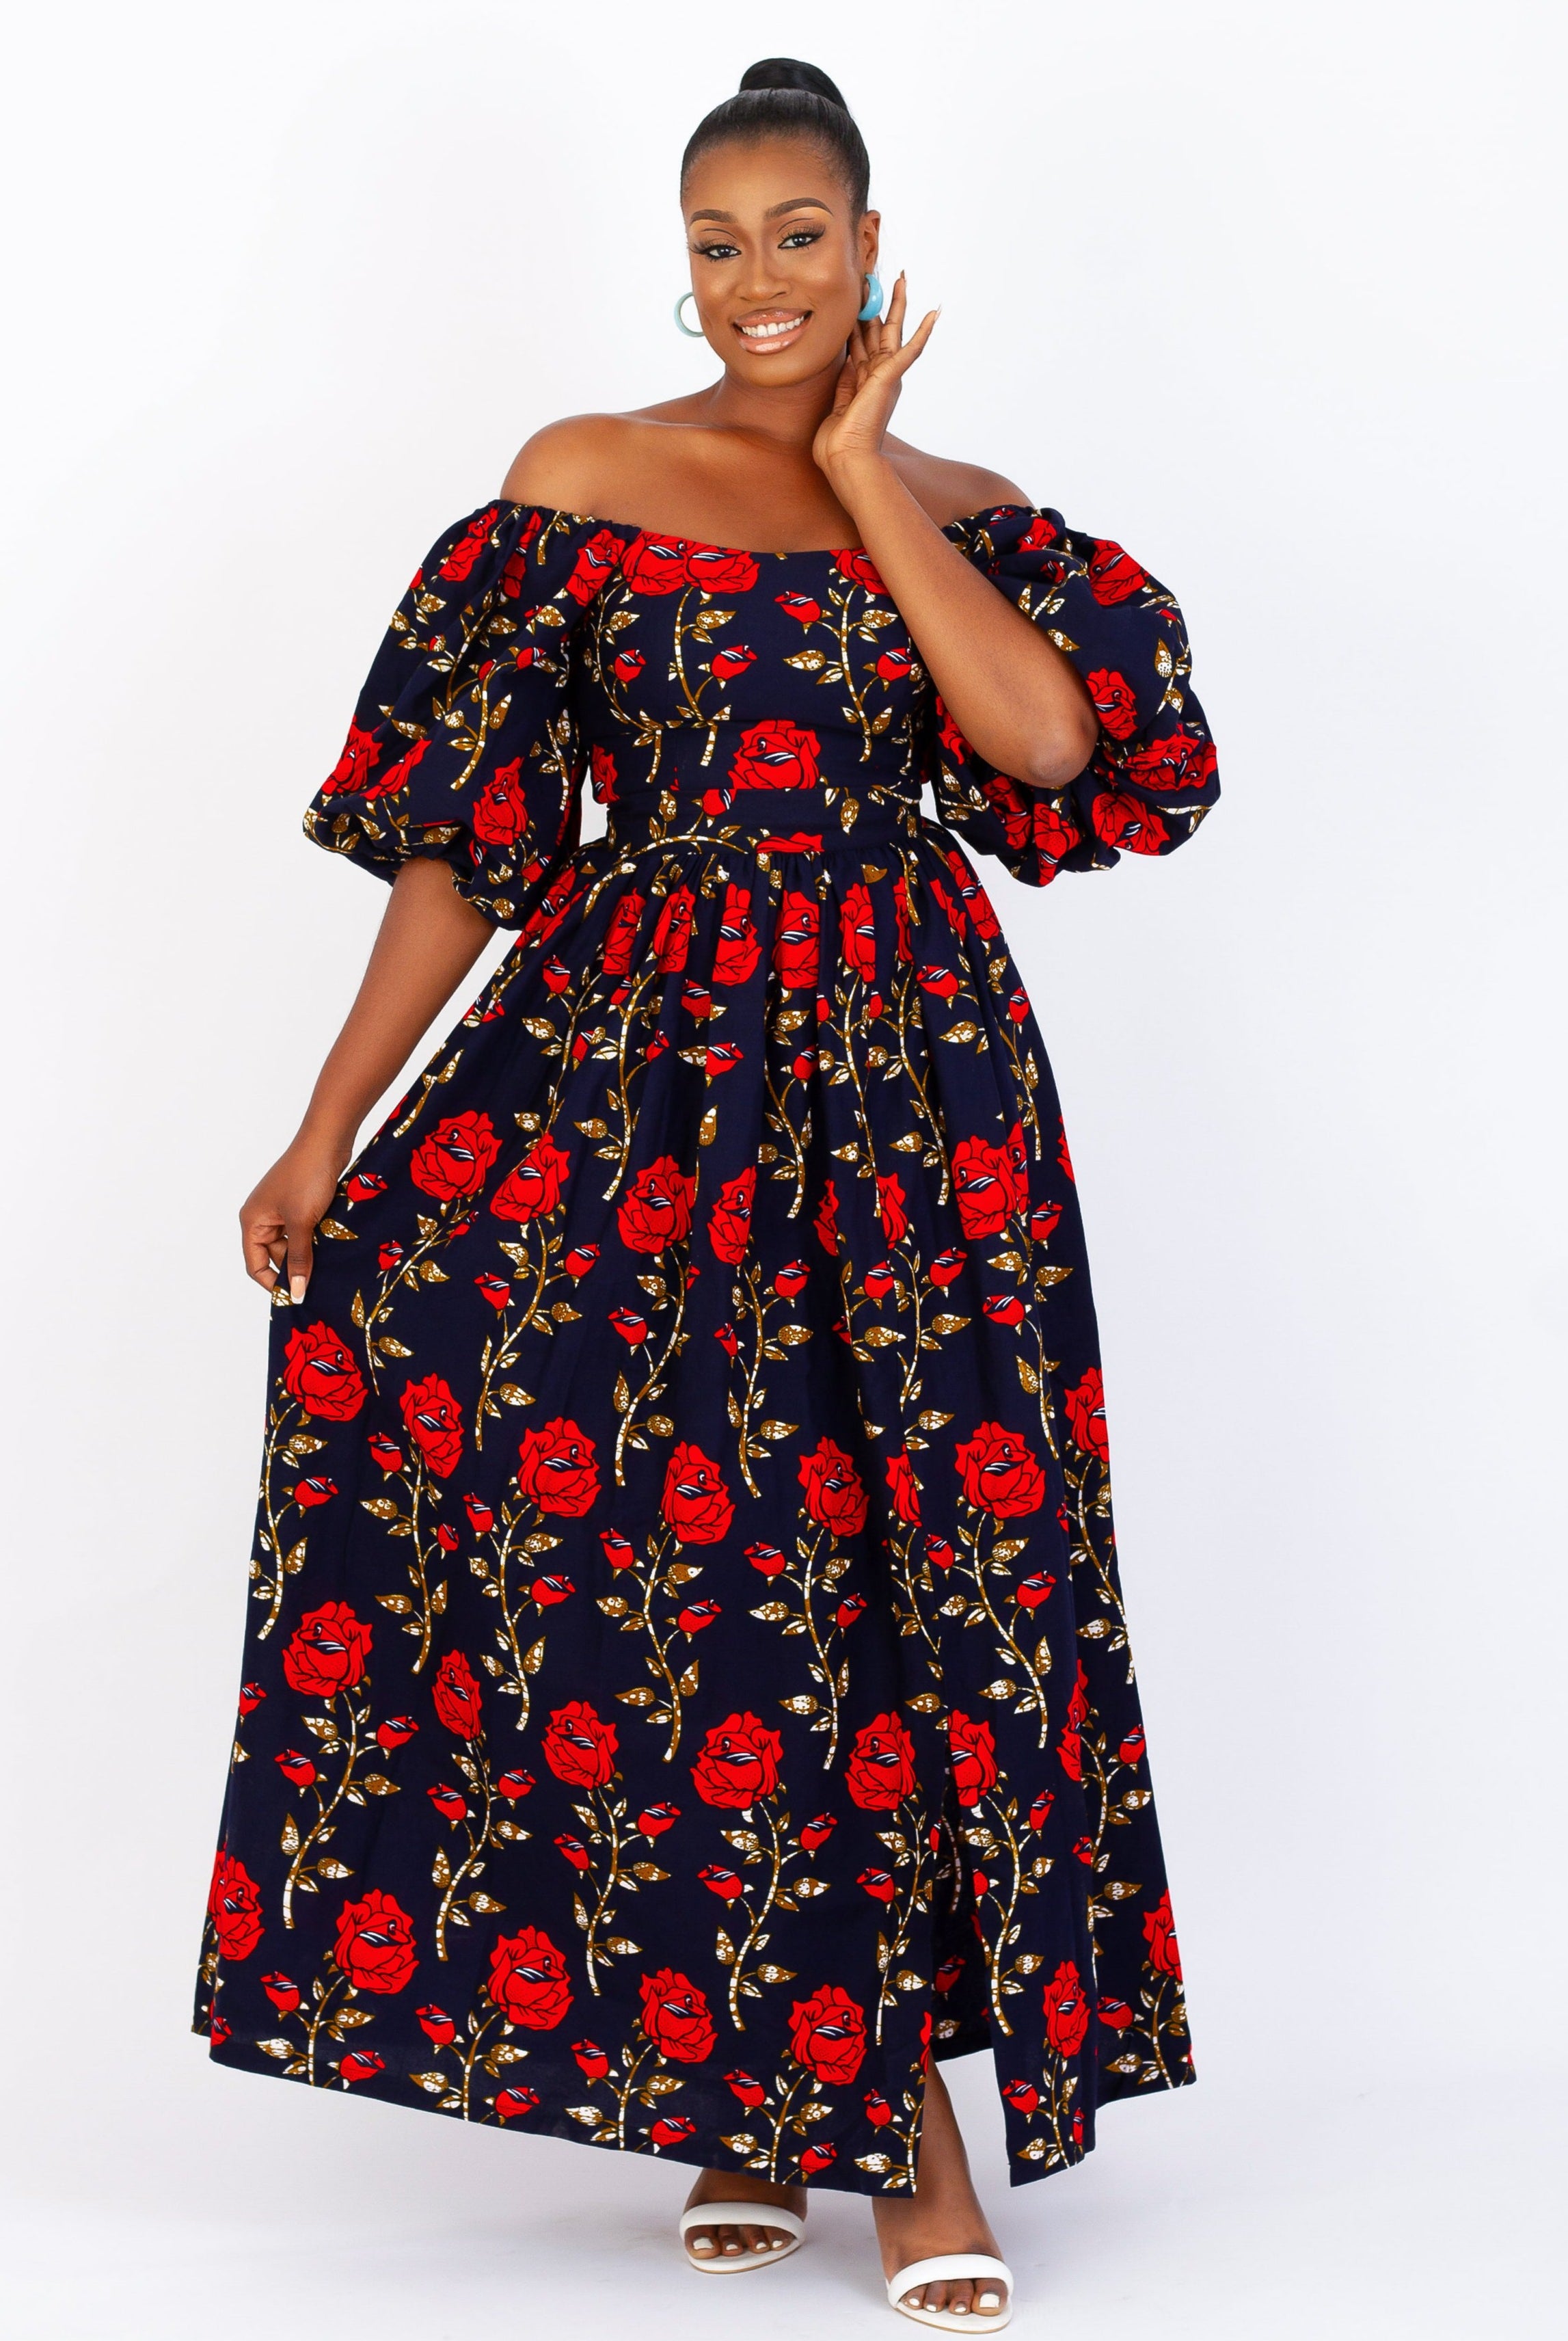 Mfon High Waist Ankara Maxi Skirt/ African Print Flare Skirt